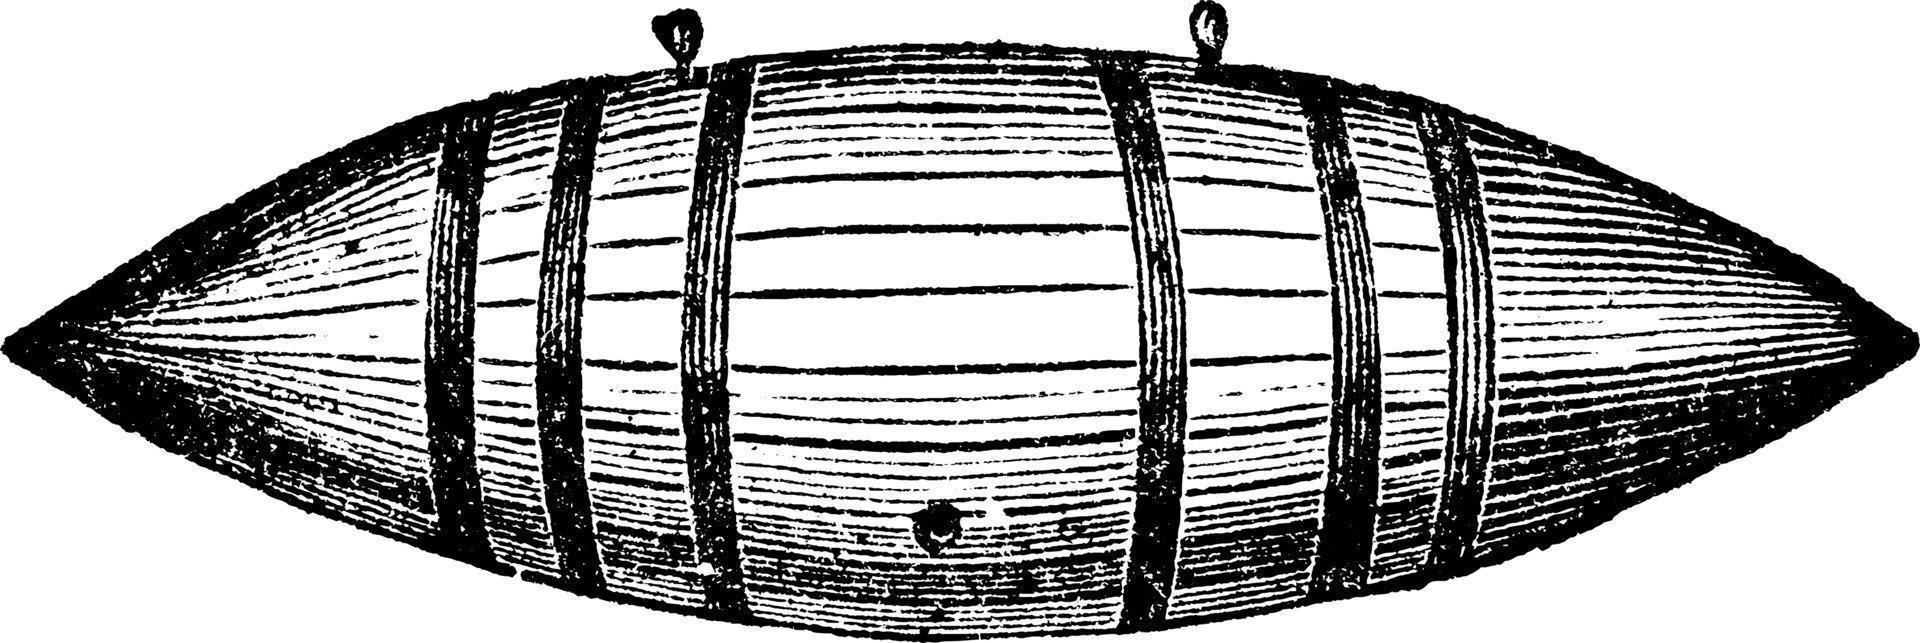 Percussion-Torpedo, Vintage-Illustration. vektor